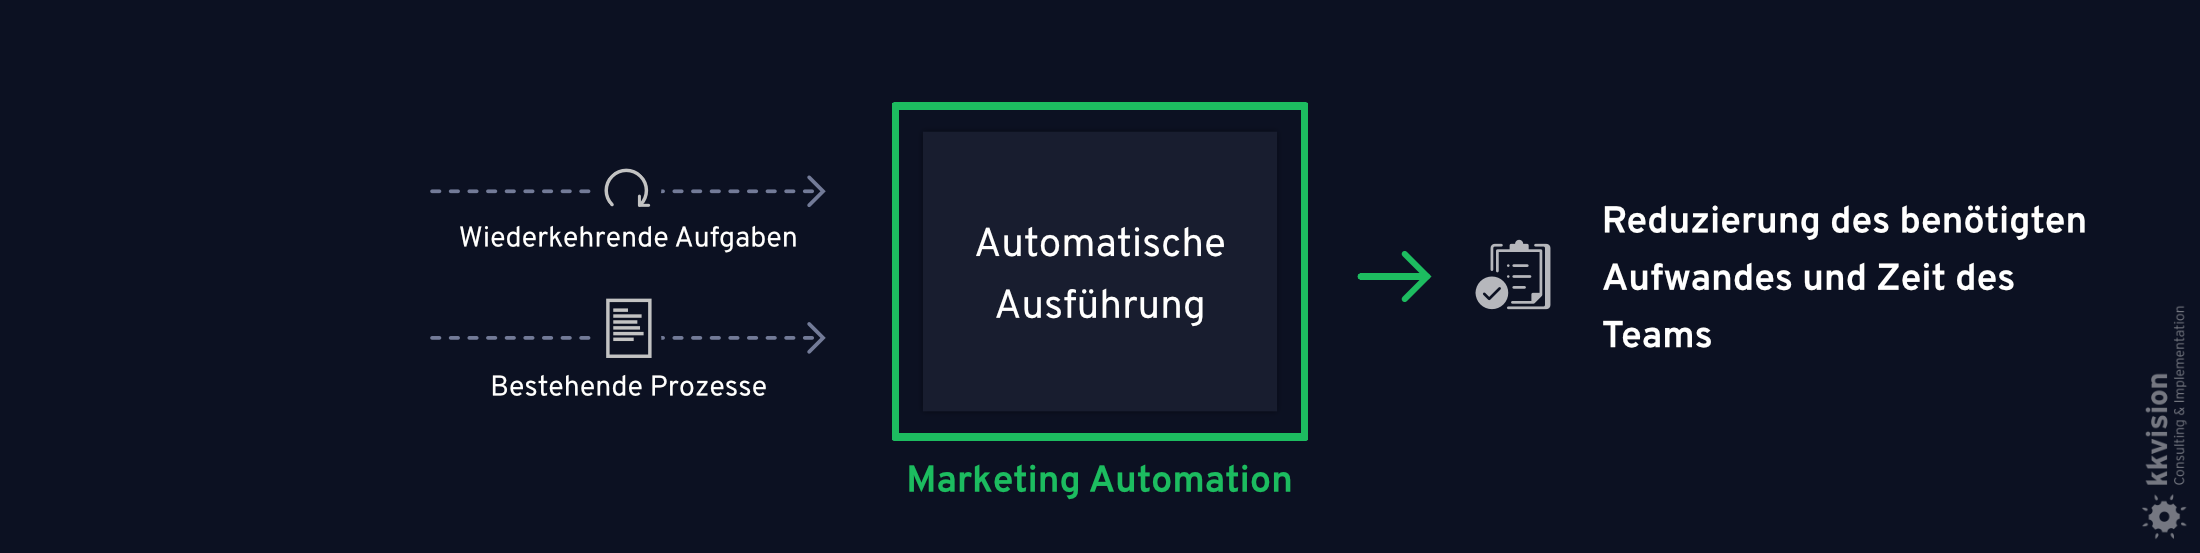 B2B Marketing Automation_13